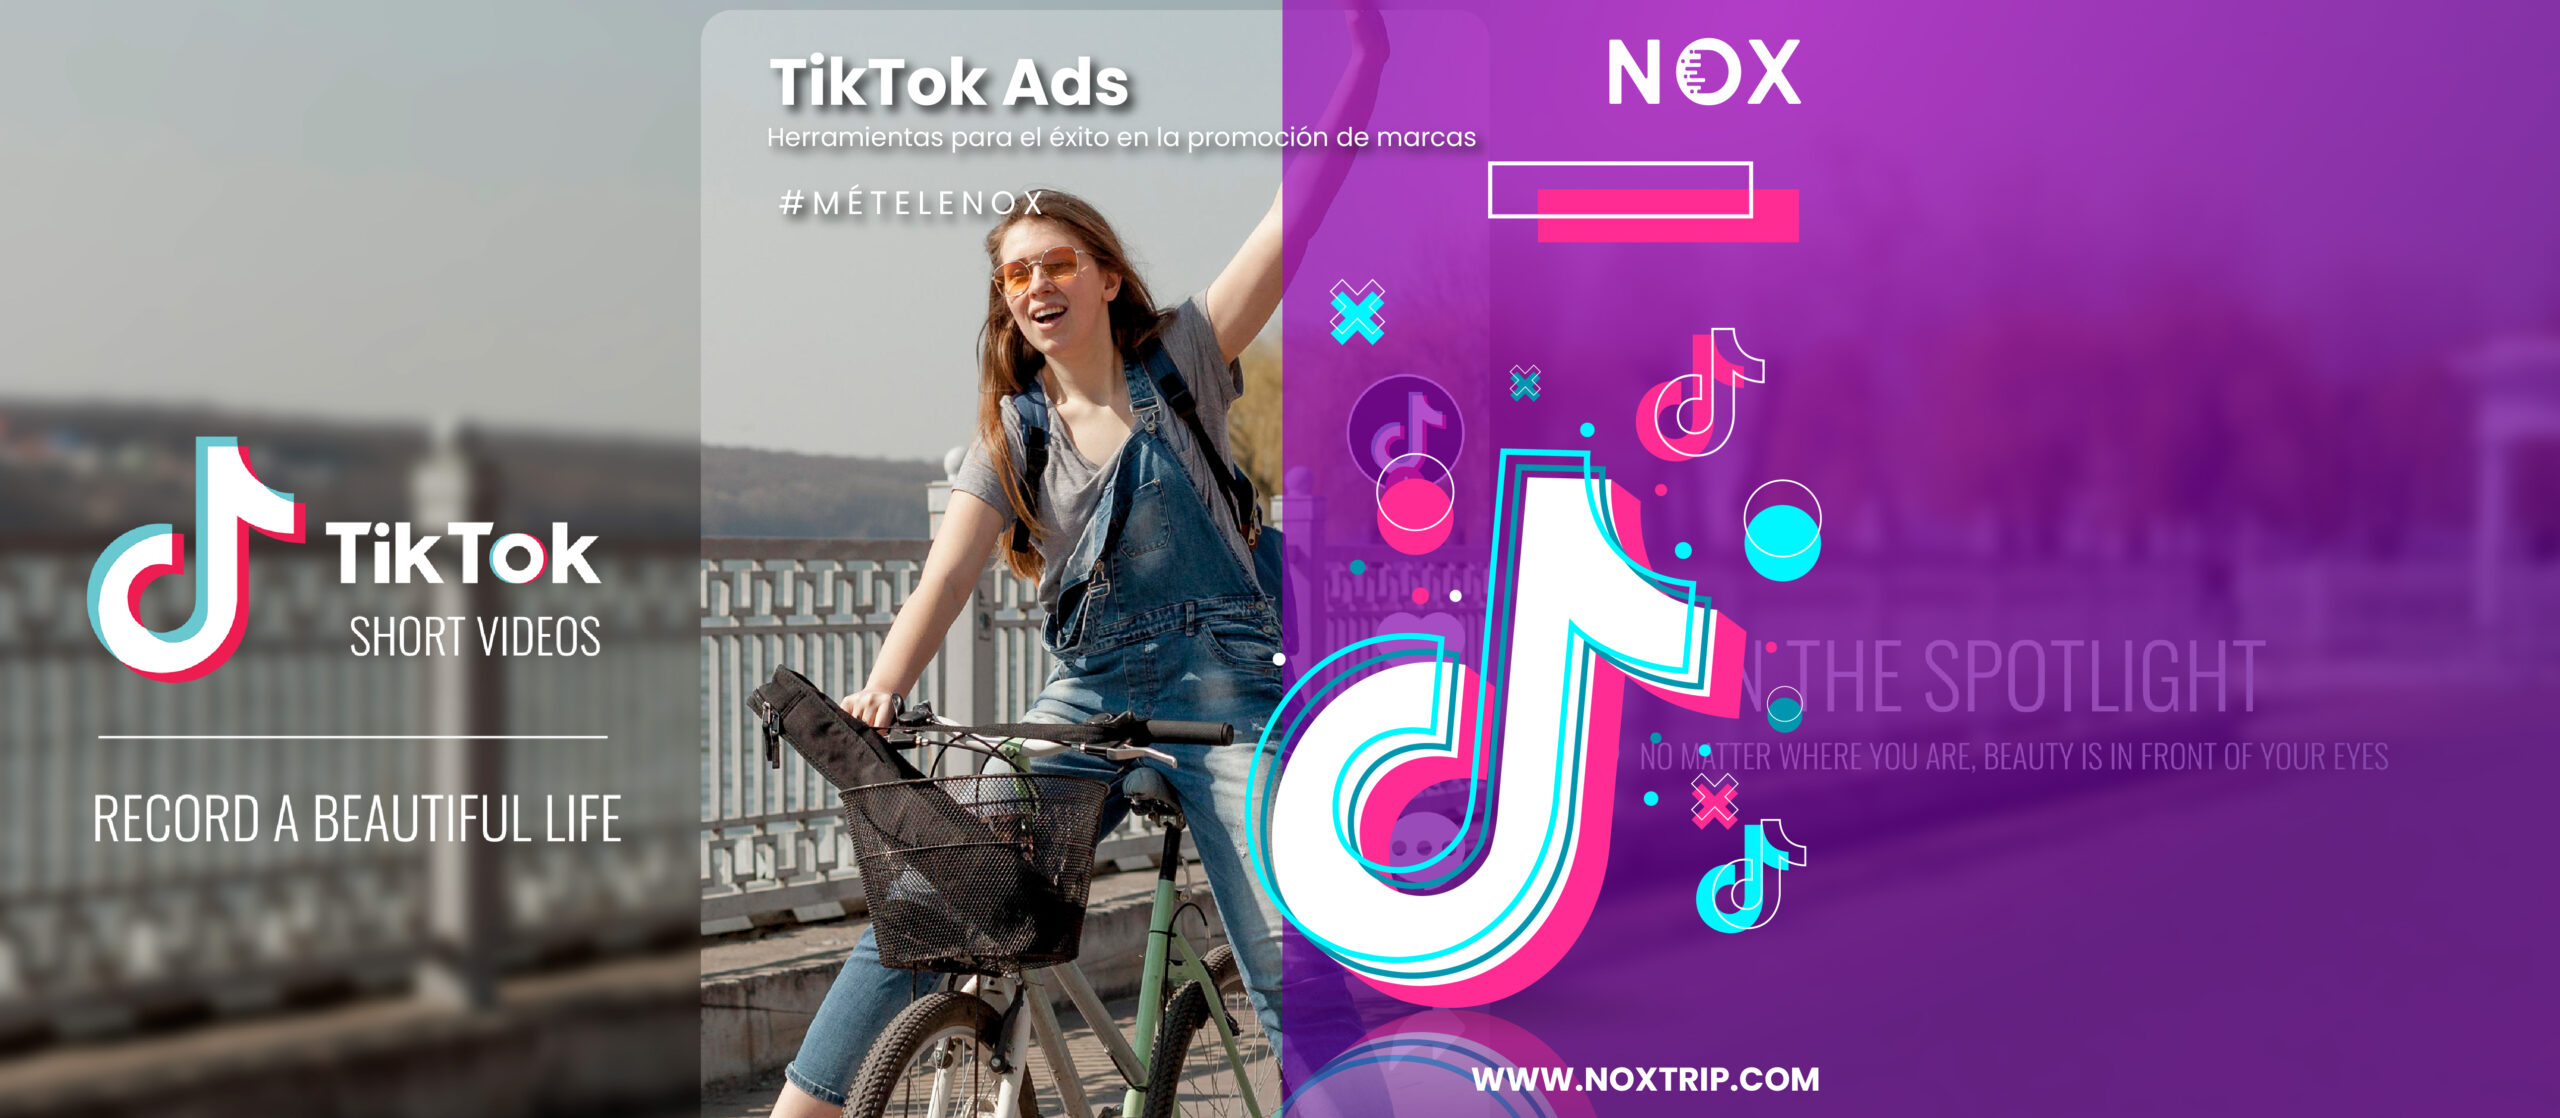 NOX Marketing Digital, TikTok Ads